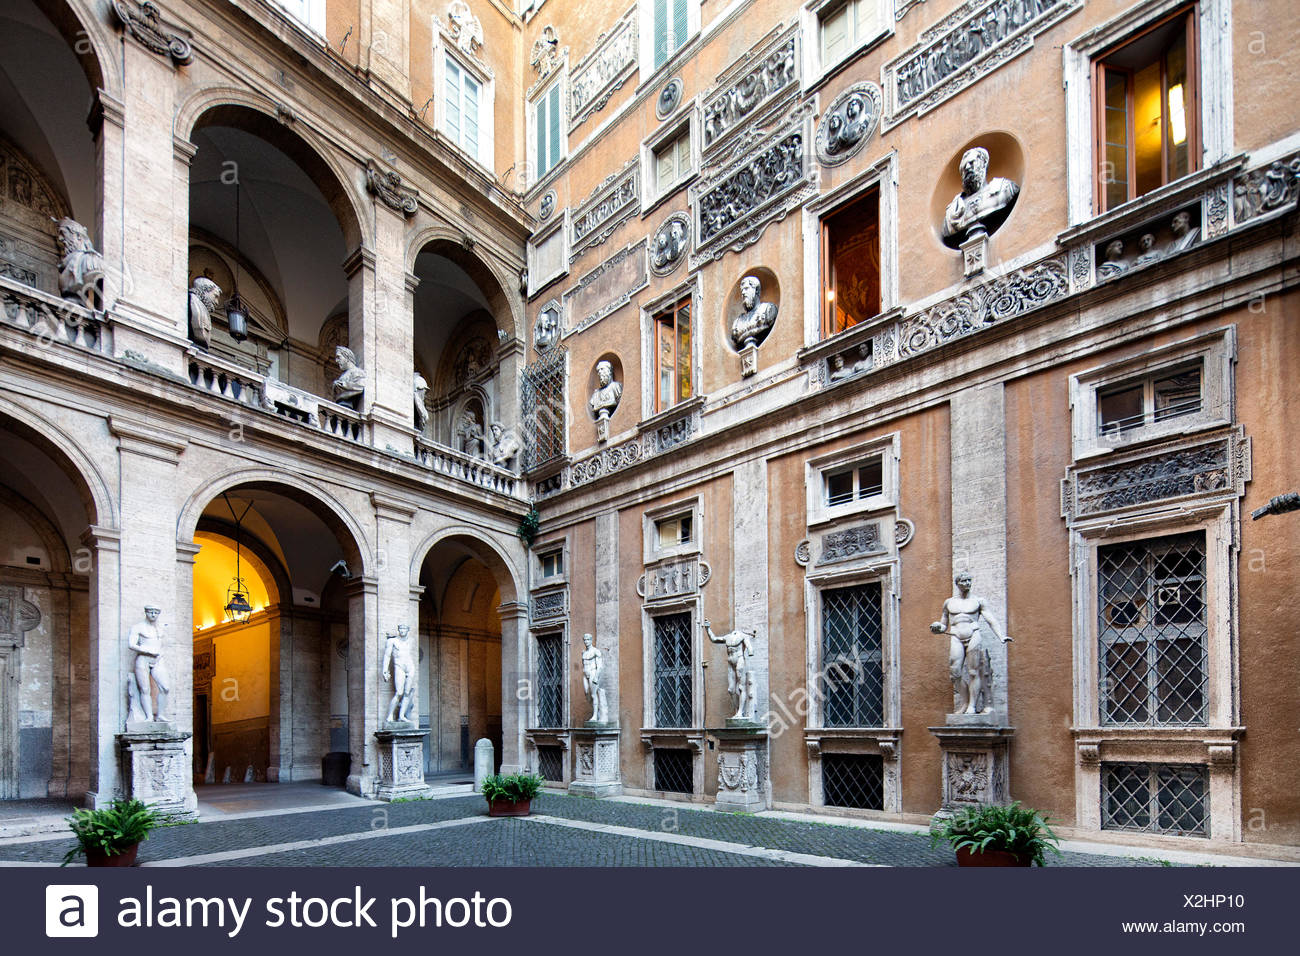 Capital, Italy, Europe, Palazzo, Pallazzo Spada, Rome, facade ...